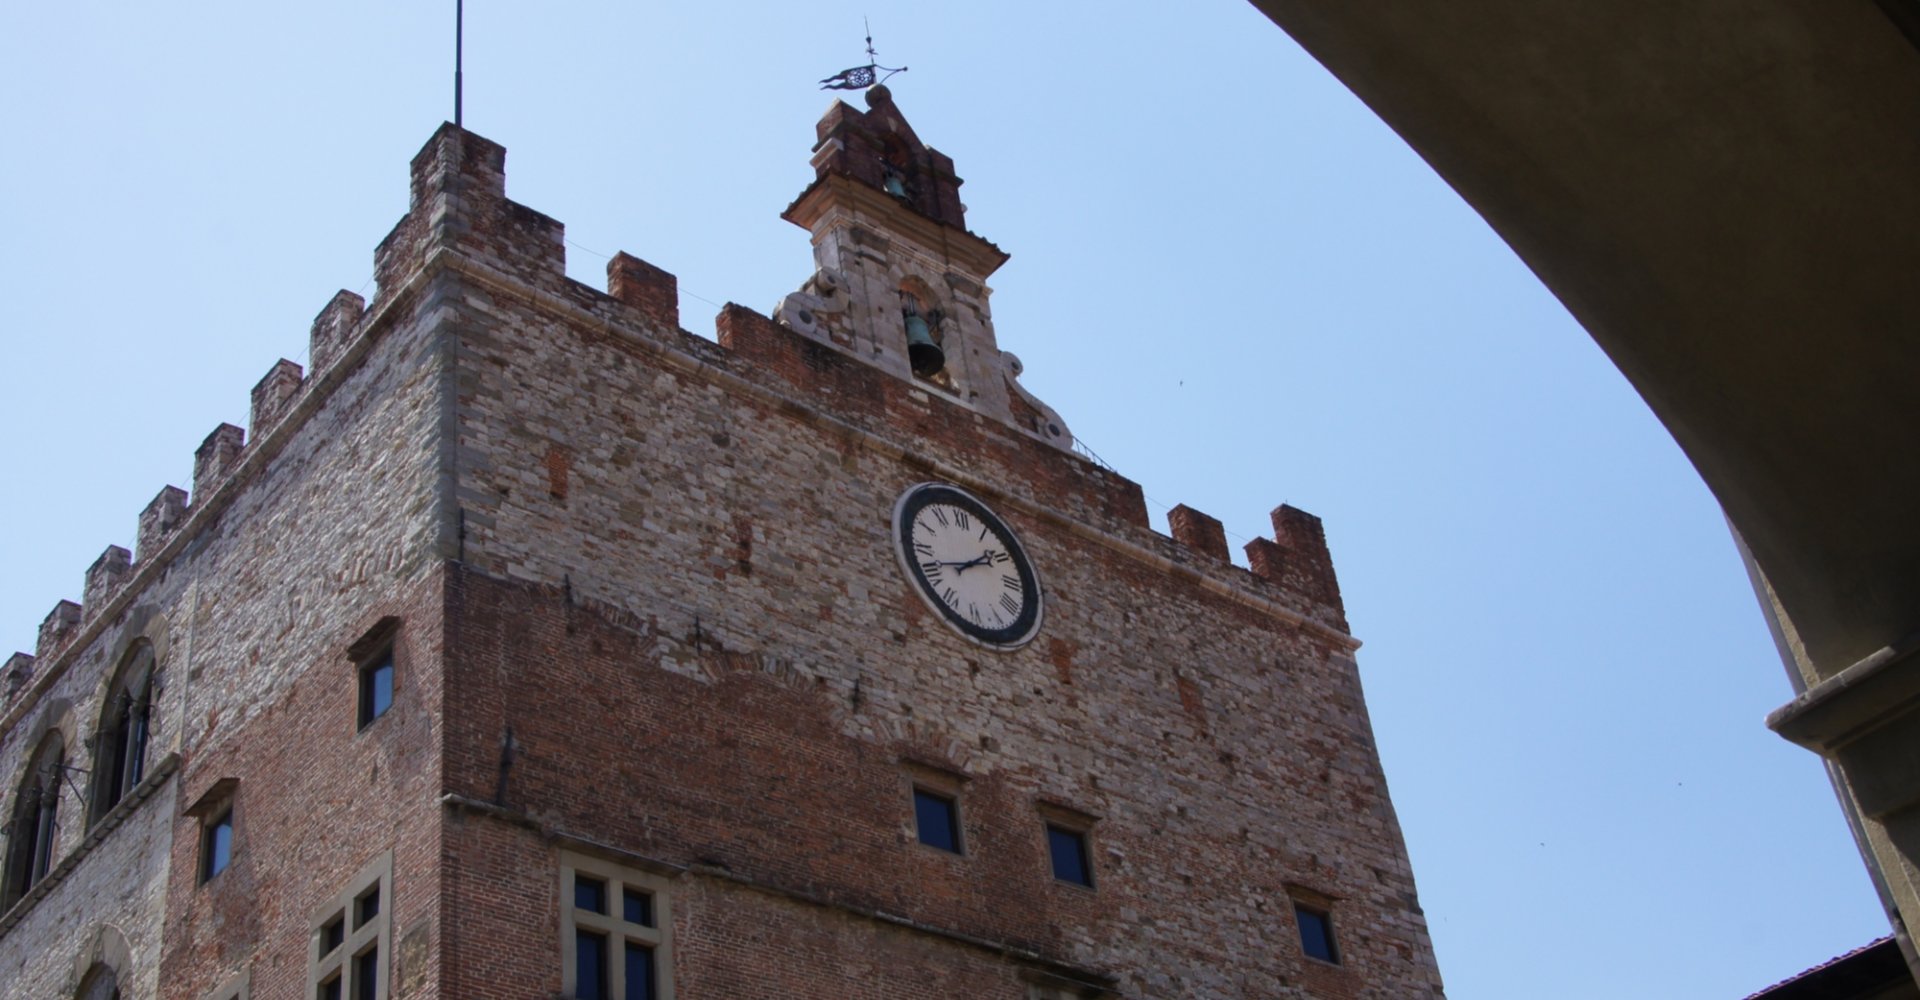 A glimpse of Palazzo Pretorio in Prato